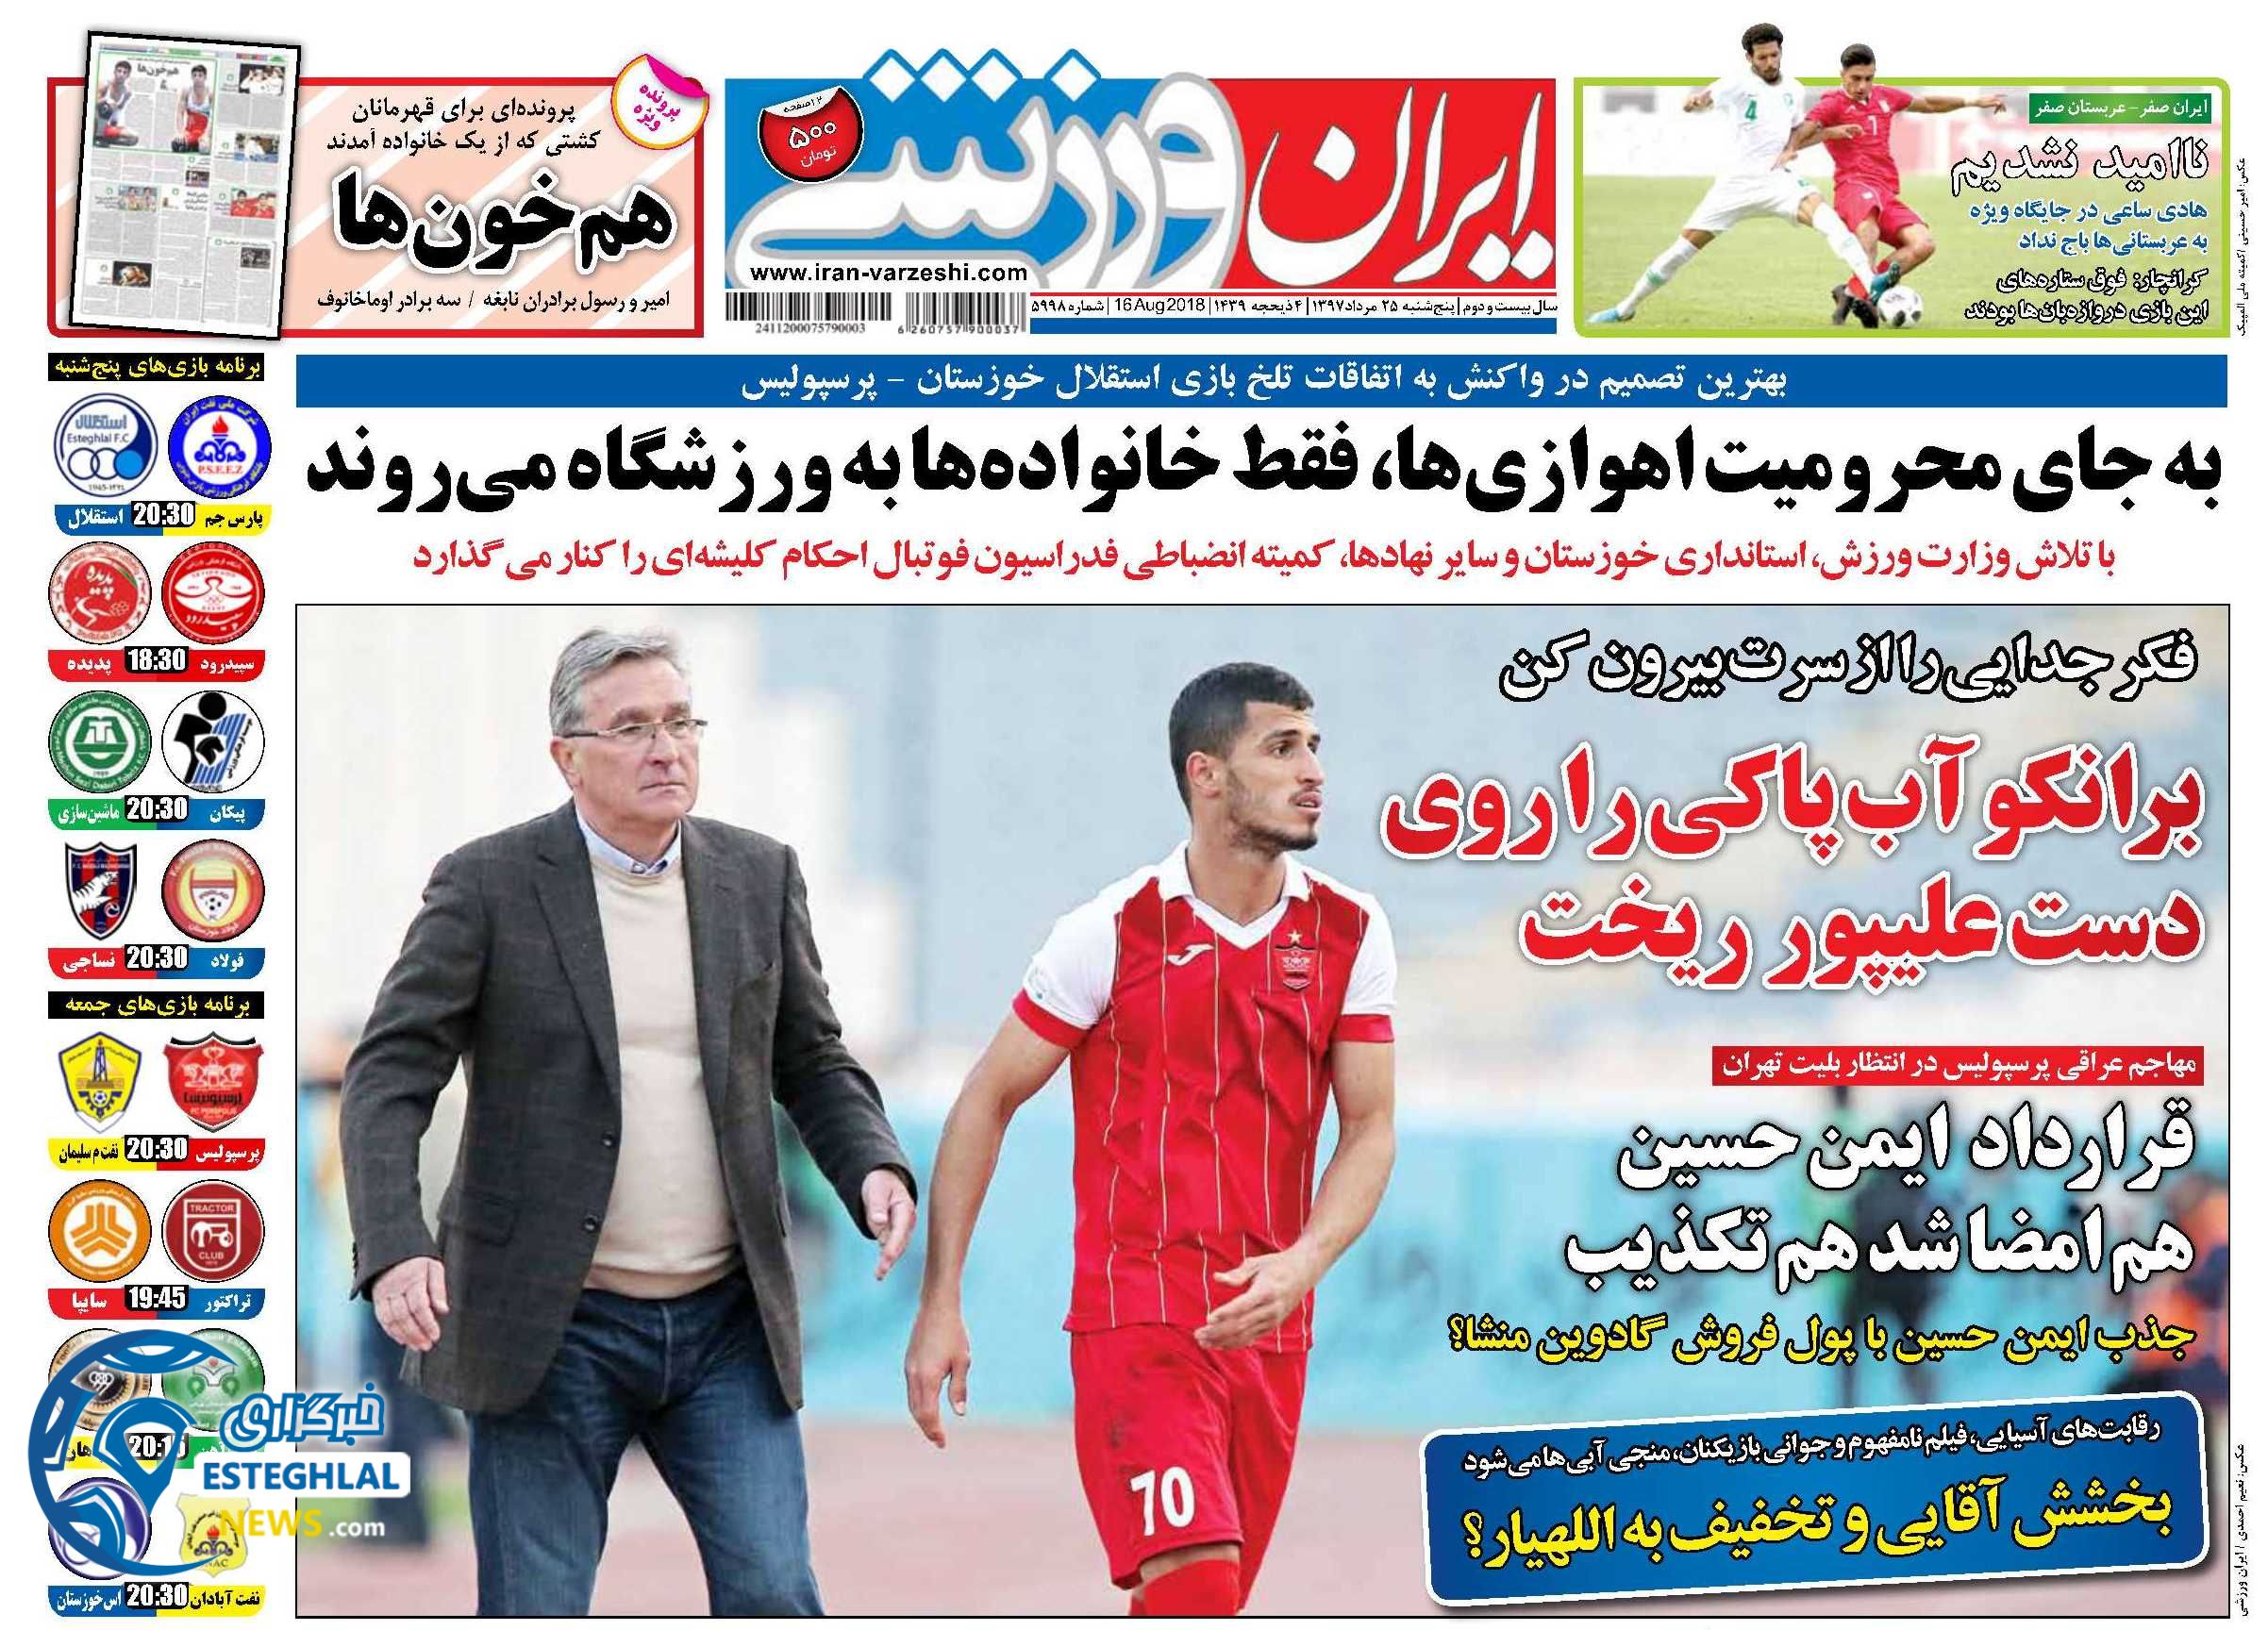 روزنامه ایران ورزشی پنجشنبه 25 مرداد 1397   